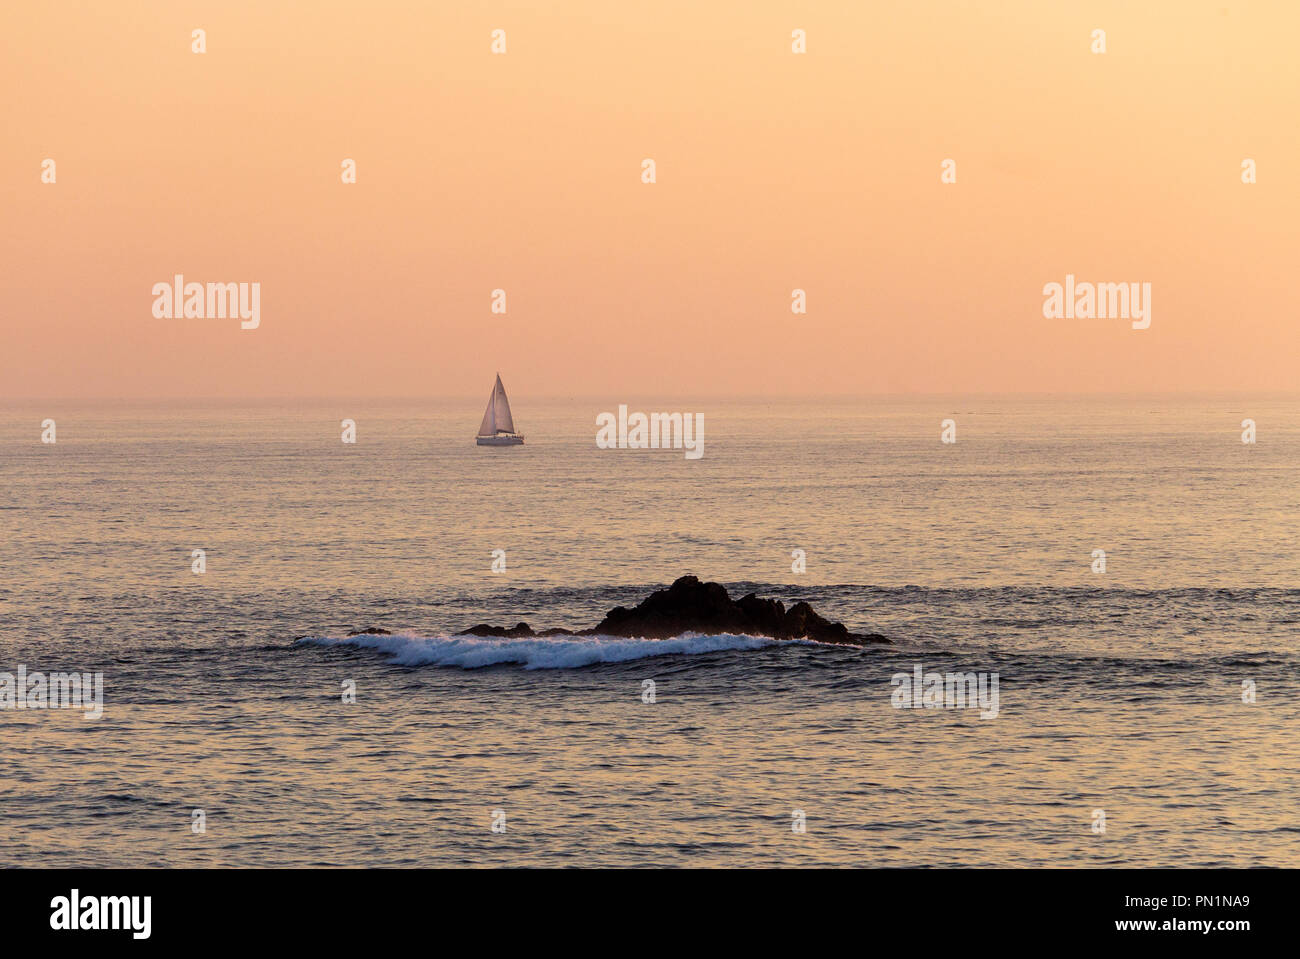 Ein entfernter Segelboot Segeln entlang dem Meer bei Sonnenuntergang mit einigen Wellen auf einem Felsen, mit dem orangefarbenen Himmel im Hintergrund. Stockfoto